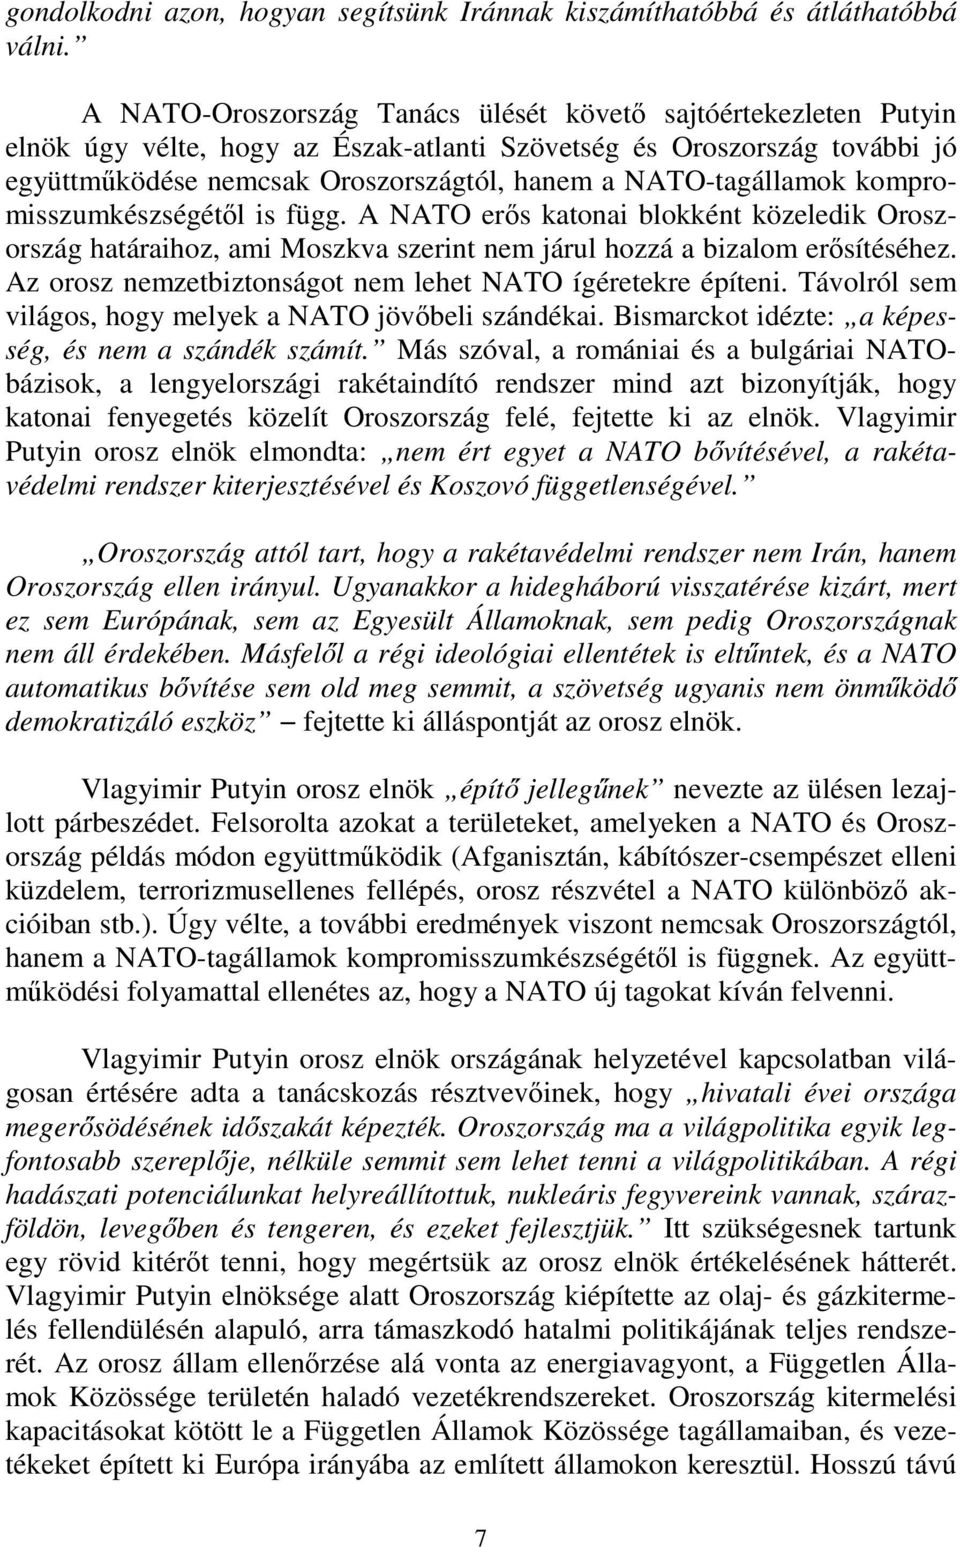 NATO-tagállamok kompromisszumkészségétől is függ. A NATO erős katonai blokként közeledik Oroszország határaihoz, ami Moszkva szerint nem járul hozzá a bizalom erősítéséhez.